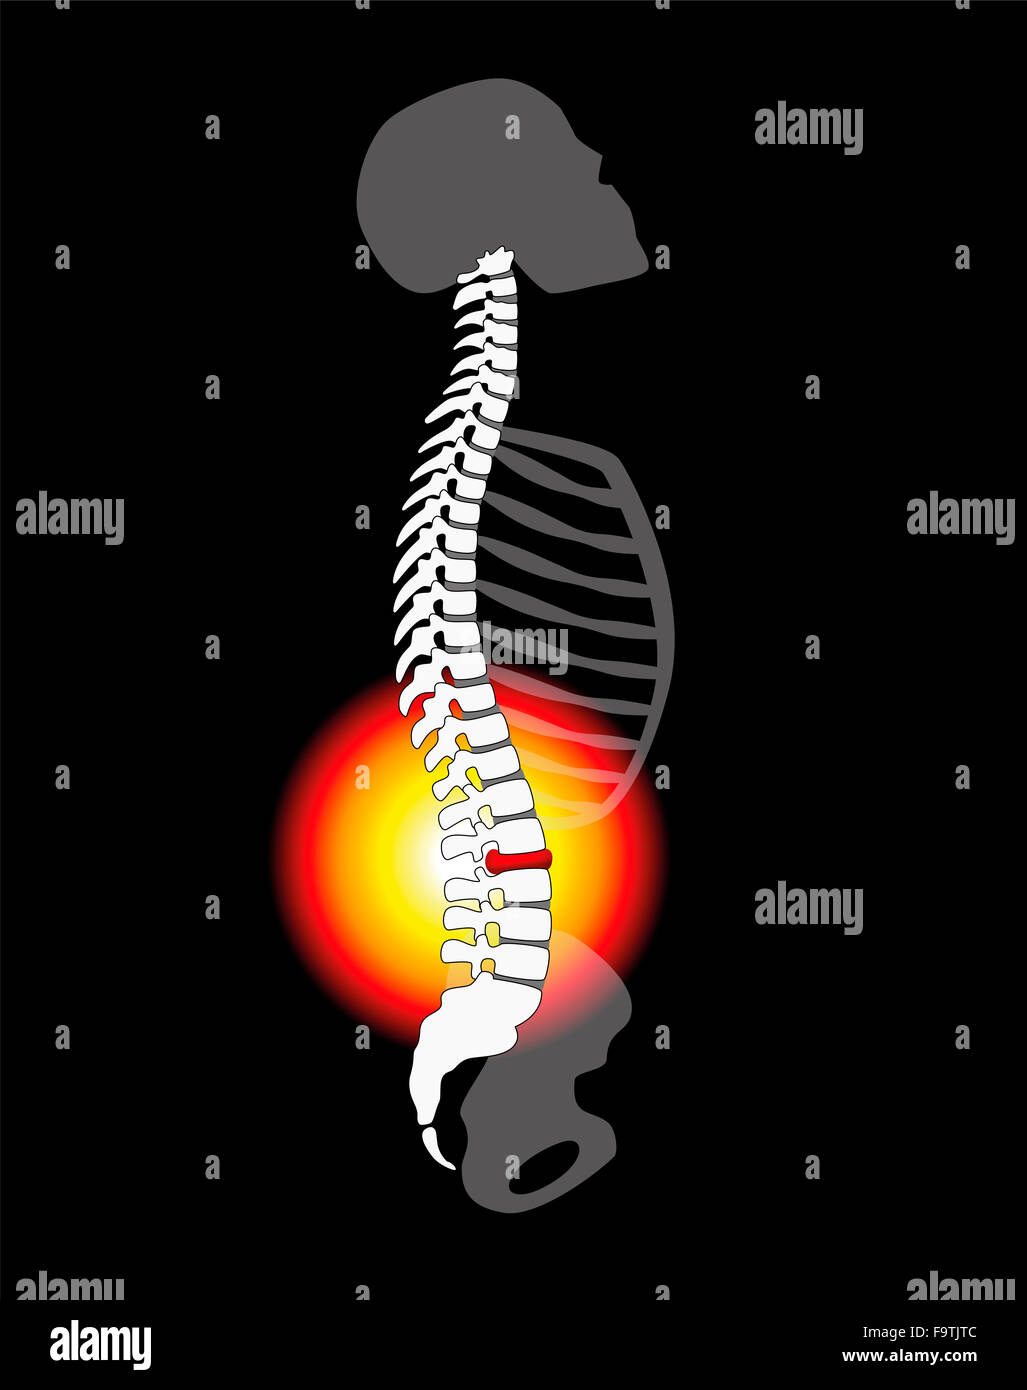 Schmerzen im Rücken - Wirbelsäule Bandscheibenvorfall oder Prolaps bei einer menschlichen Wirbelsäule - Höhenplan. Stockfoto